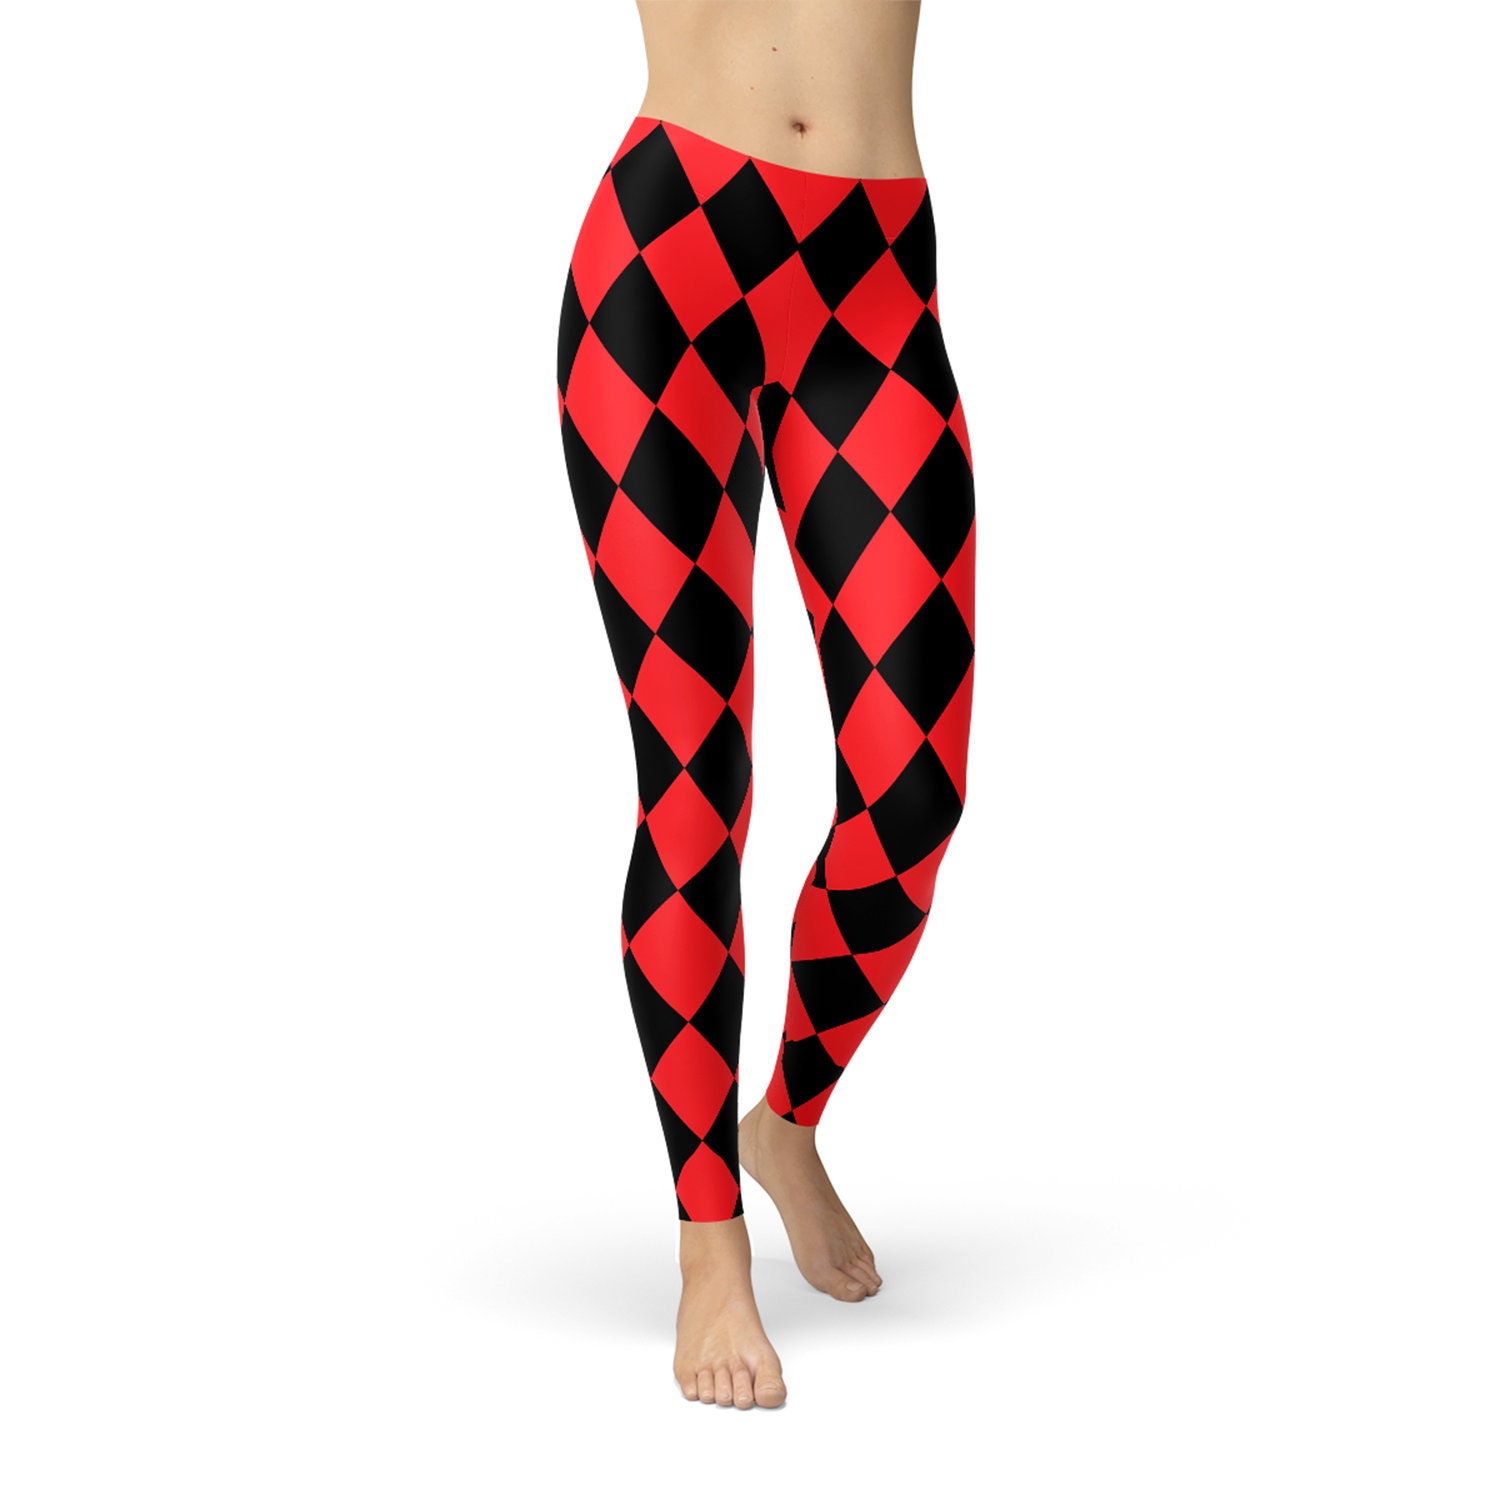 Jester Leggings for Women Inspired Harley Quinn Leggings Red and Black  Diamond Pattern Print for Cosplay Costume or Halloween Leggings -   Canada